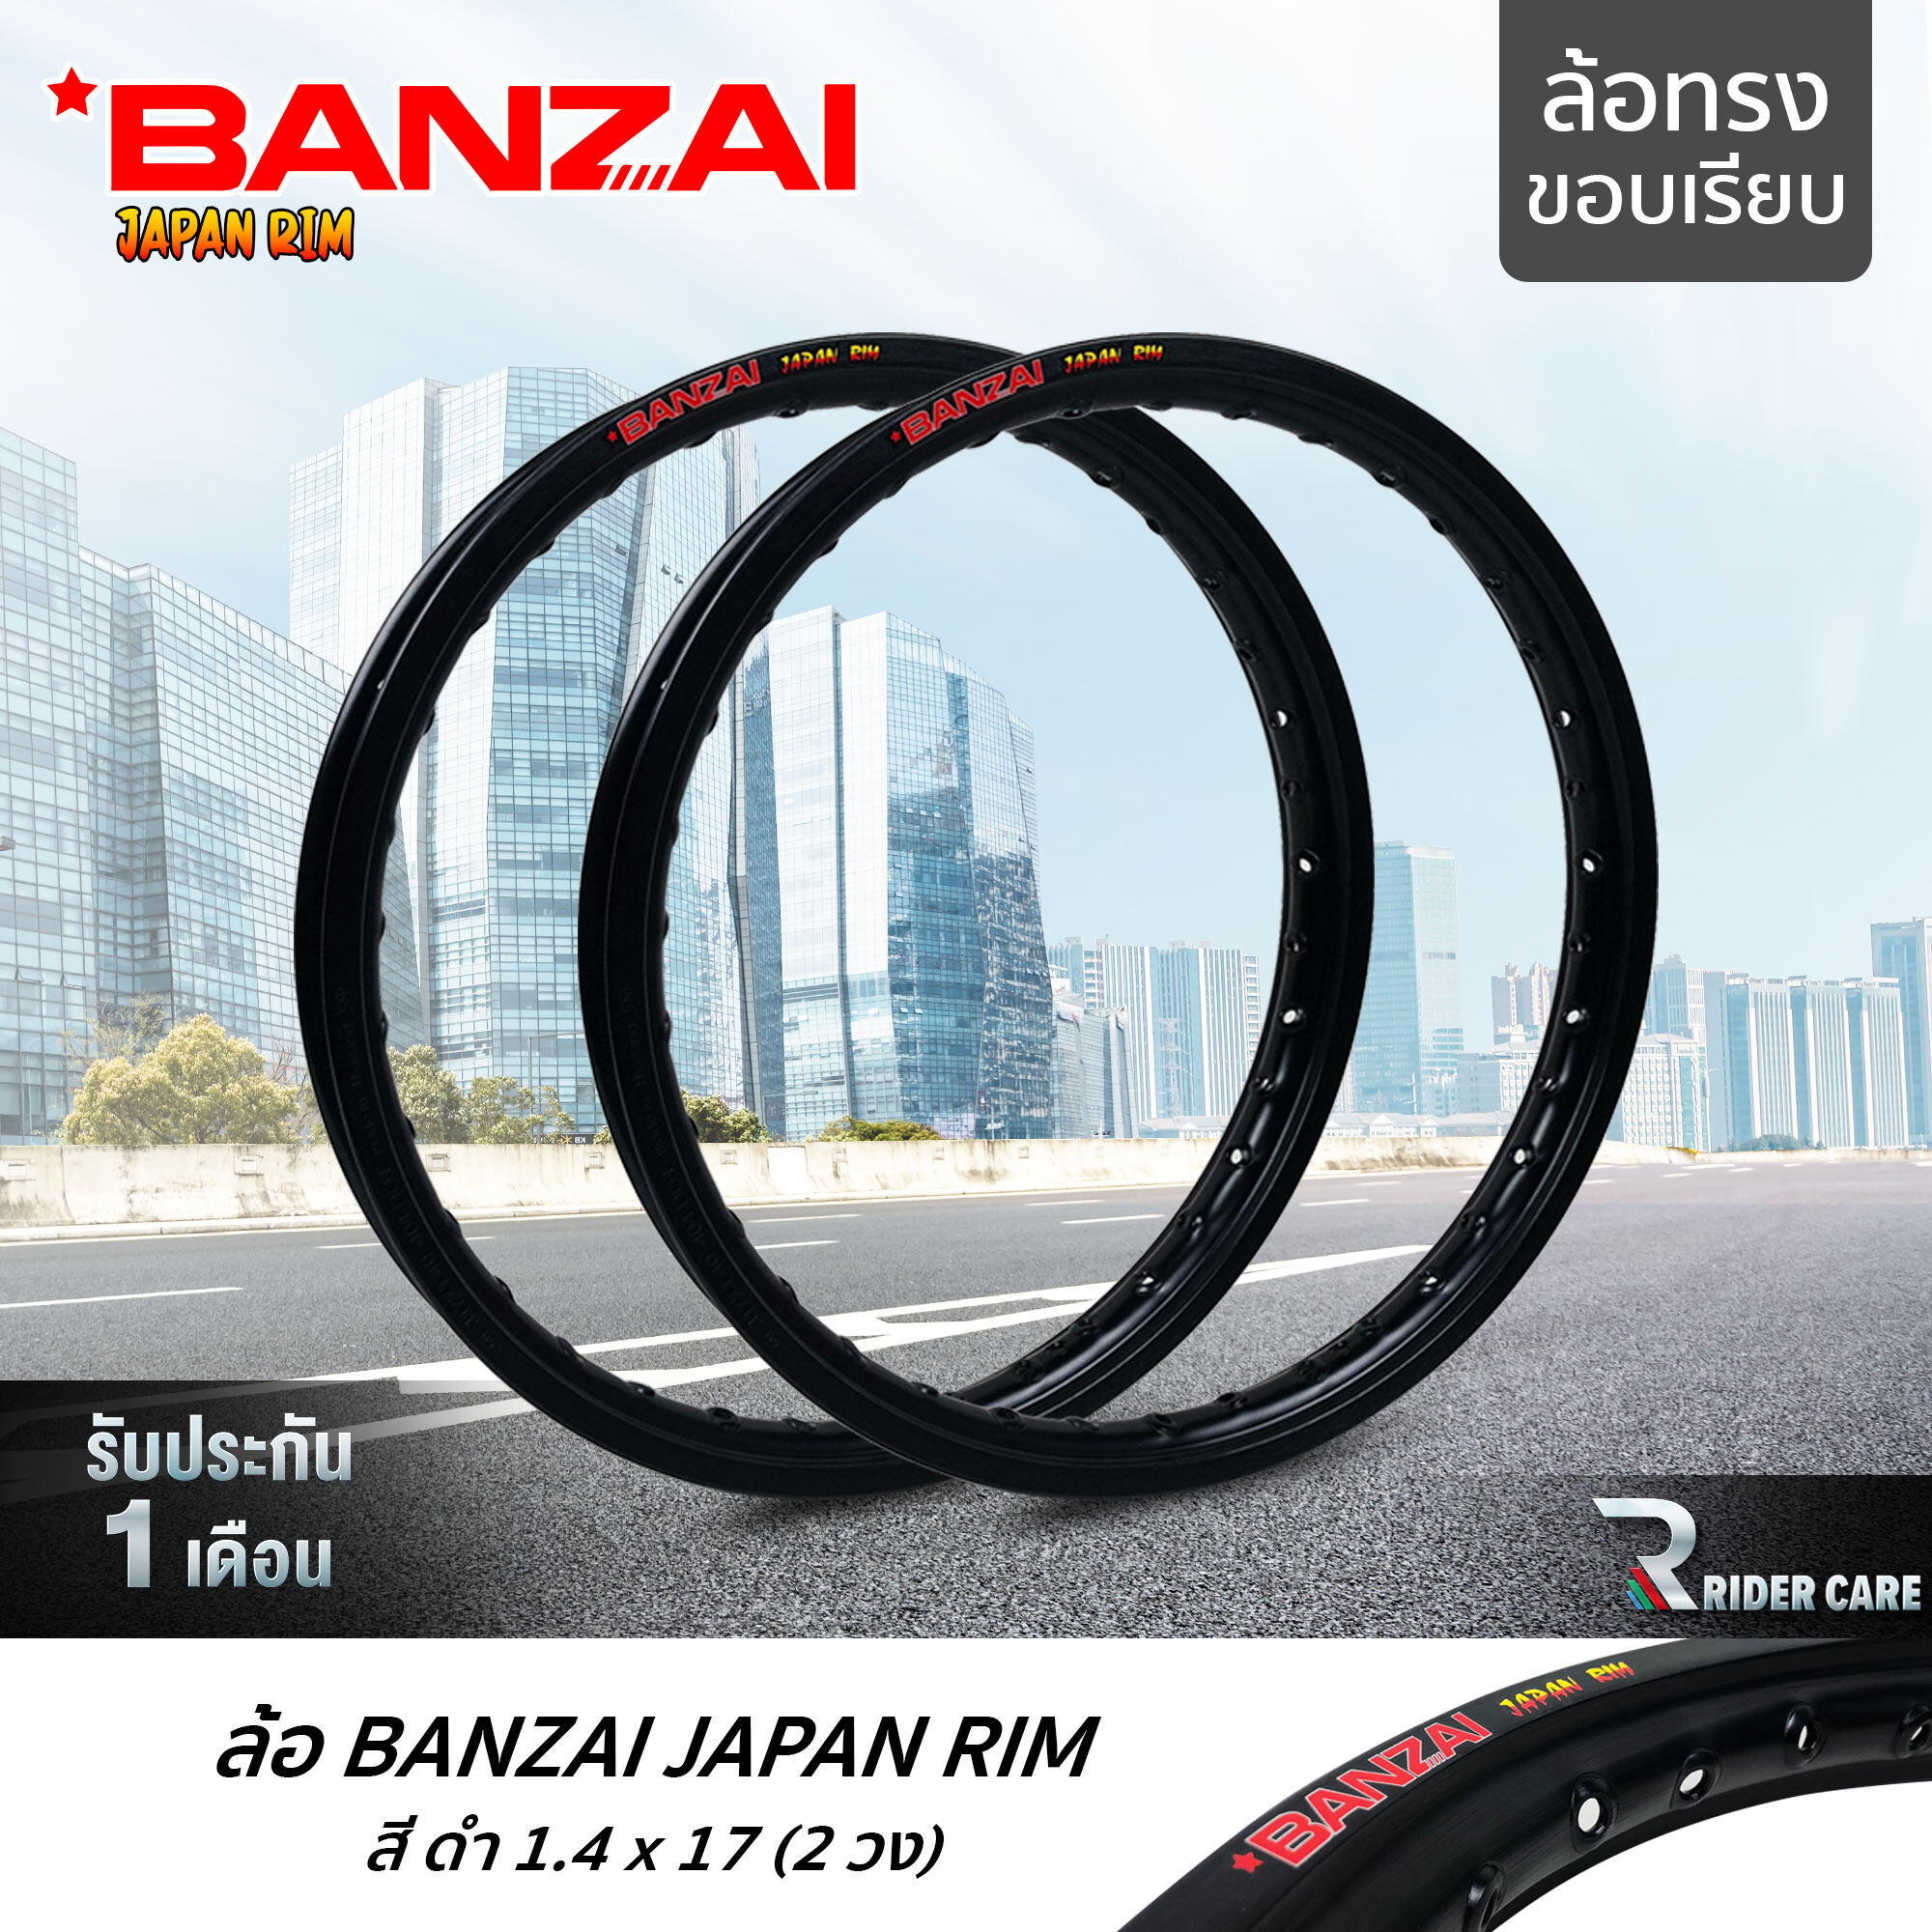 BANZAI ล้อขอบ 17 บันไซ รุ่น JAPAN RIM 1.4 ขอบ17 นิ้ว ล้อทรงขอบเรียบ แพ็คคู่ 2 วง วัสดุอลูมิเนียม ของแท้ รถจักรยานยนต์ สี ดำ